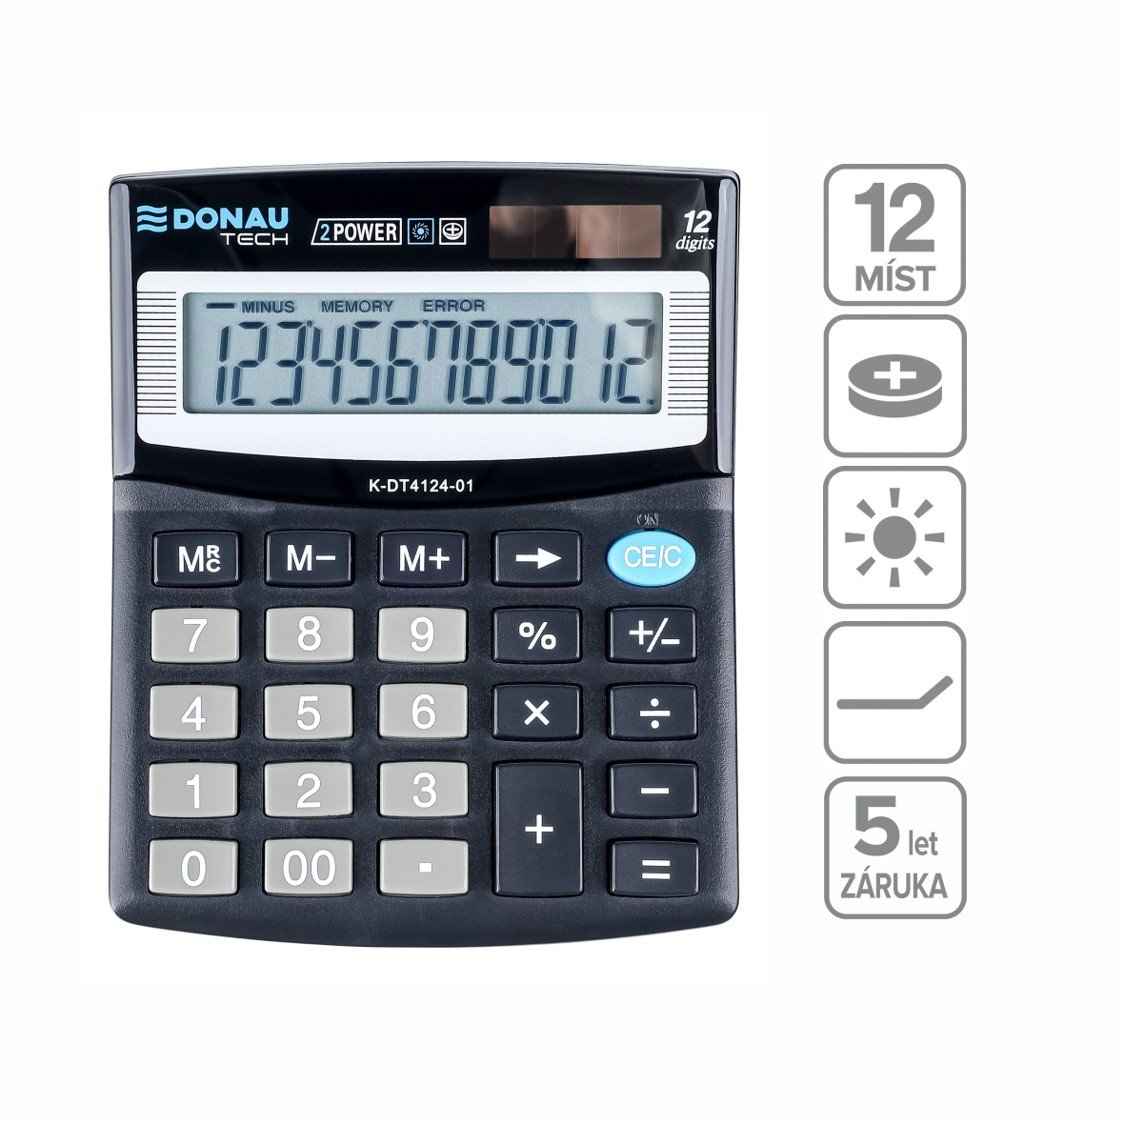 Levně DONAU kancelářská kalkulačka DONAU TECH 4124, 12místná, černá